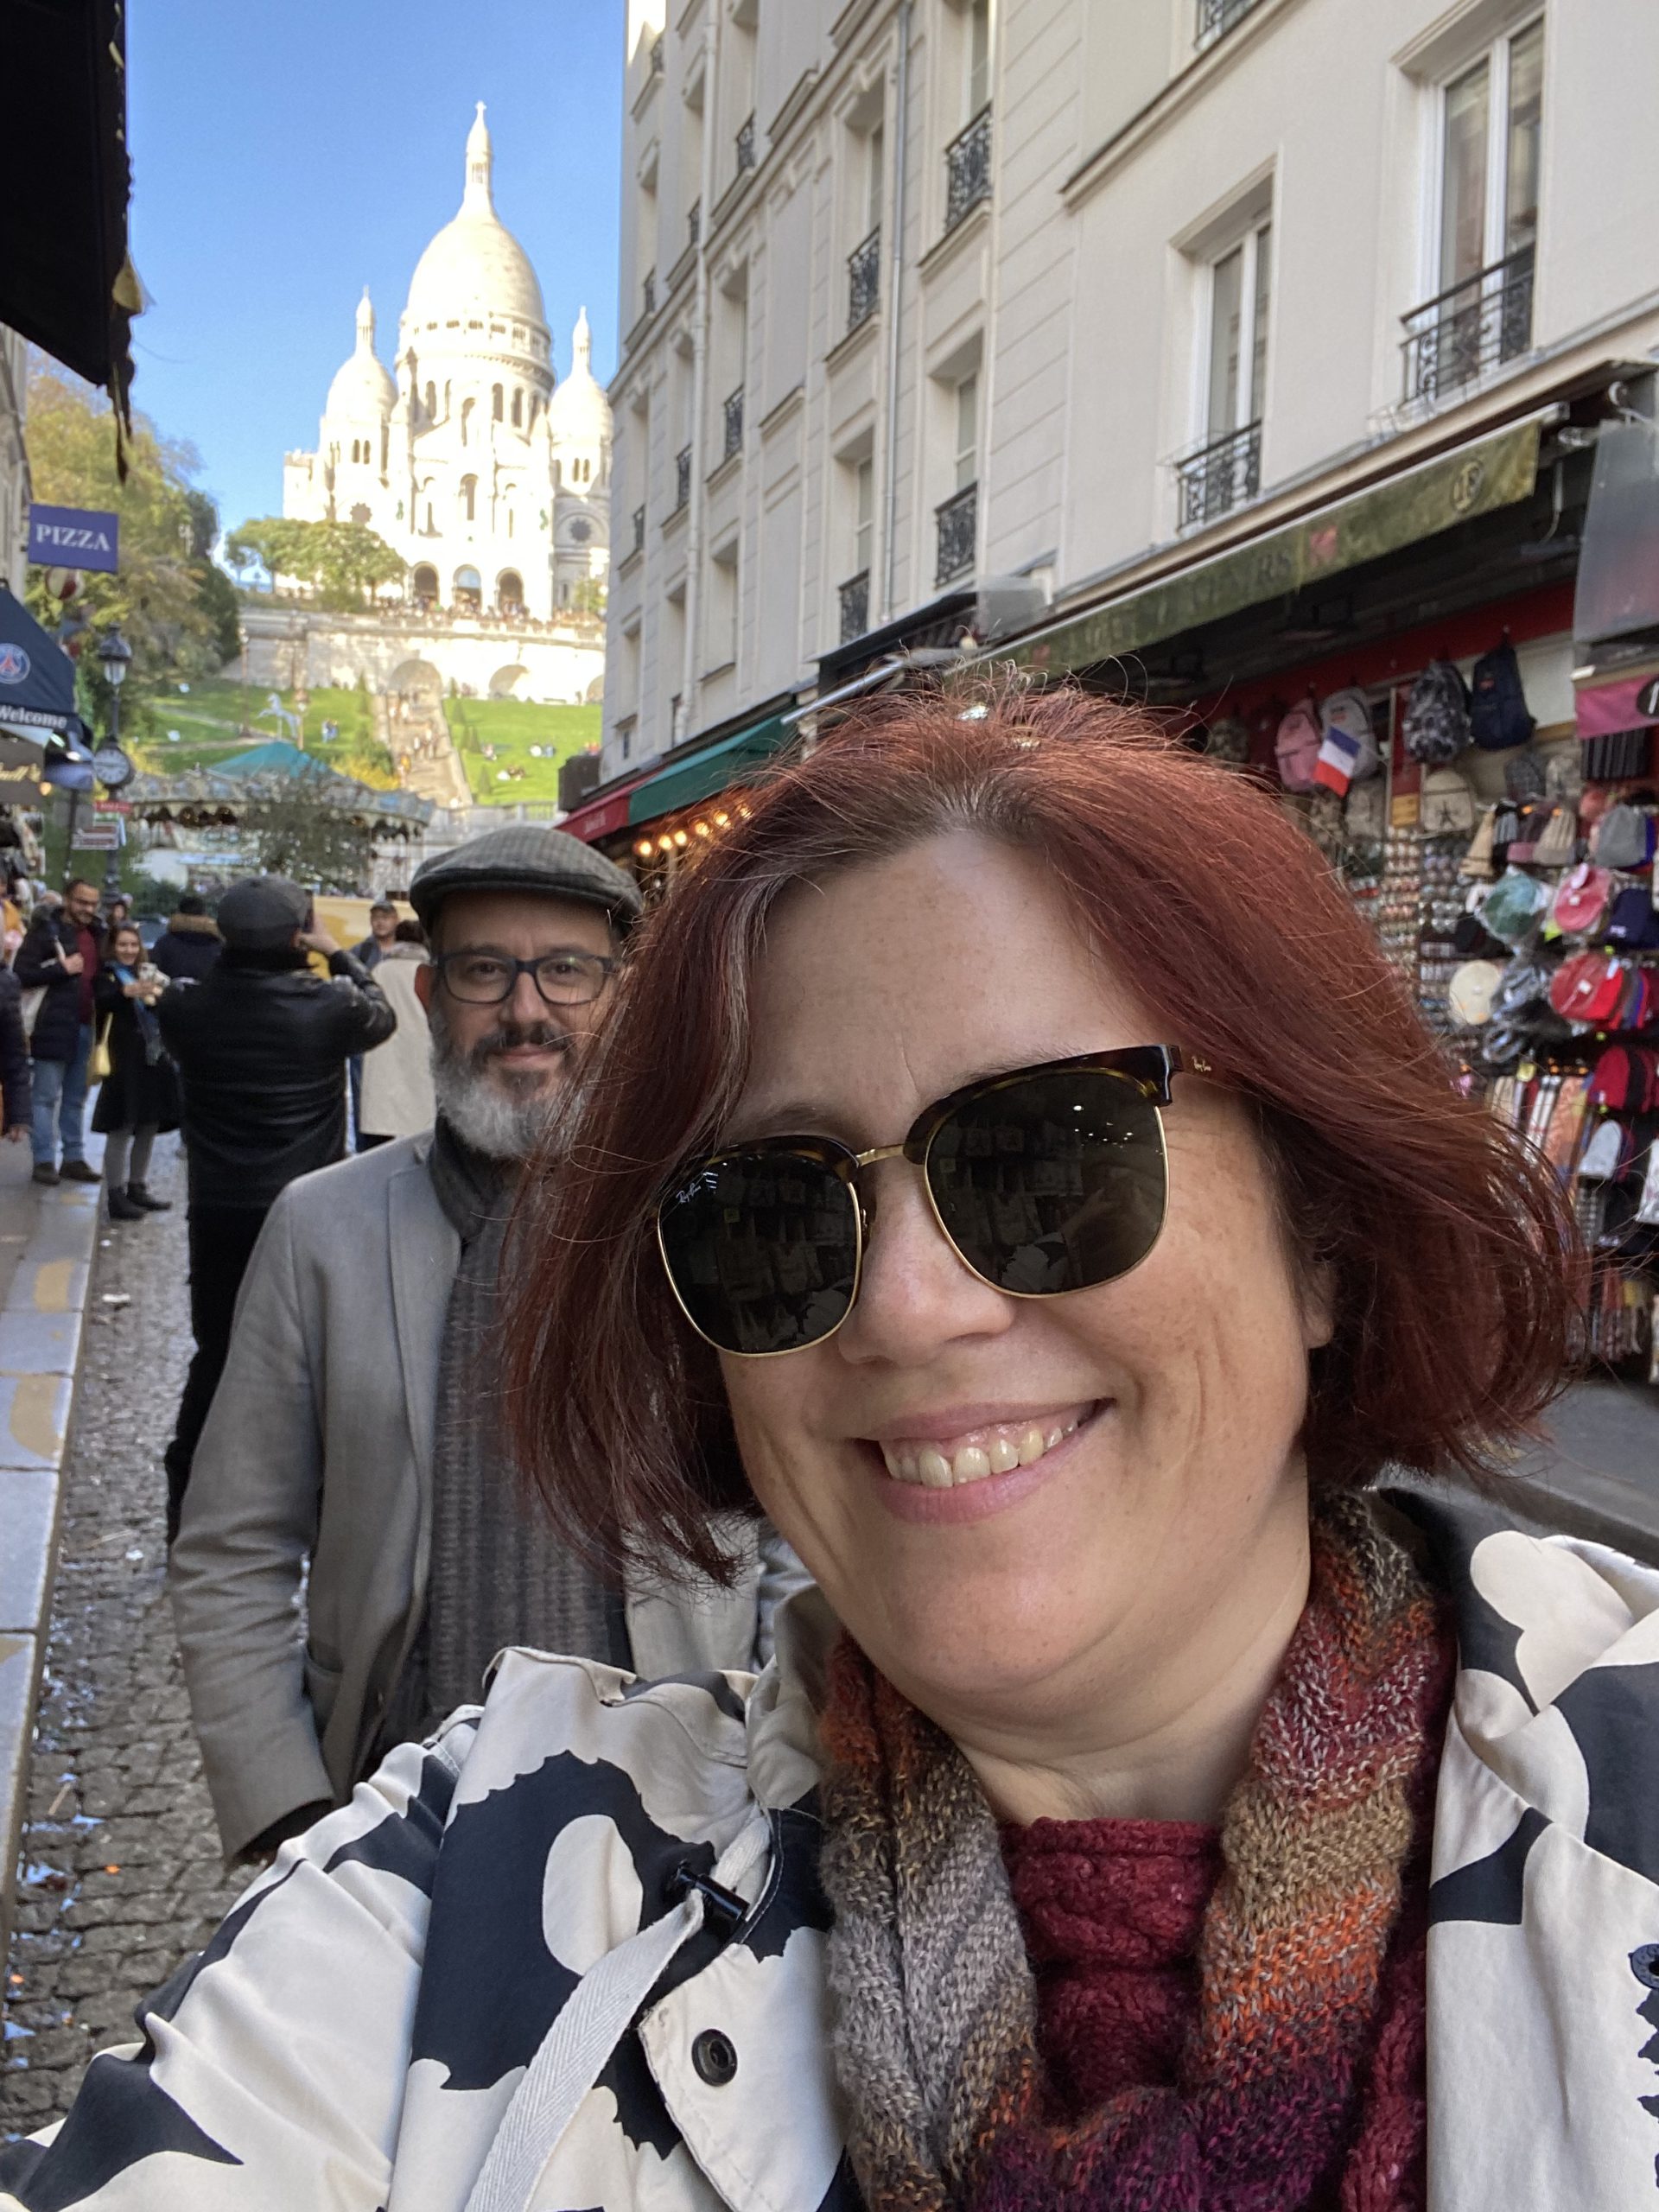 Selfie with Sacre-Coeur